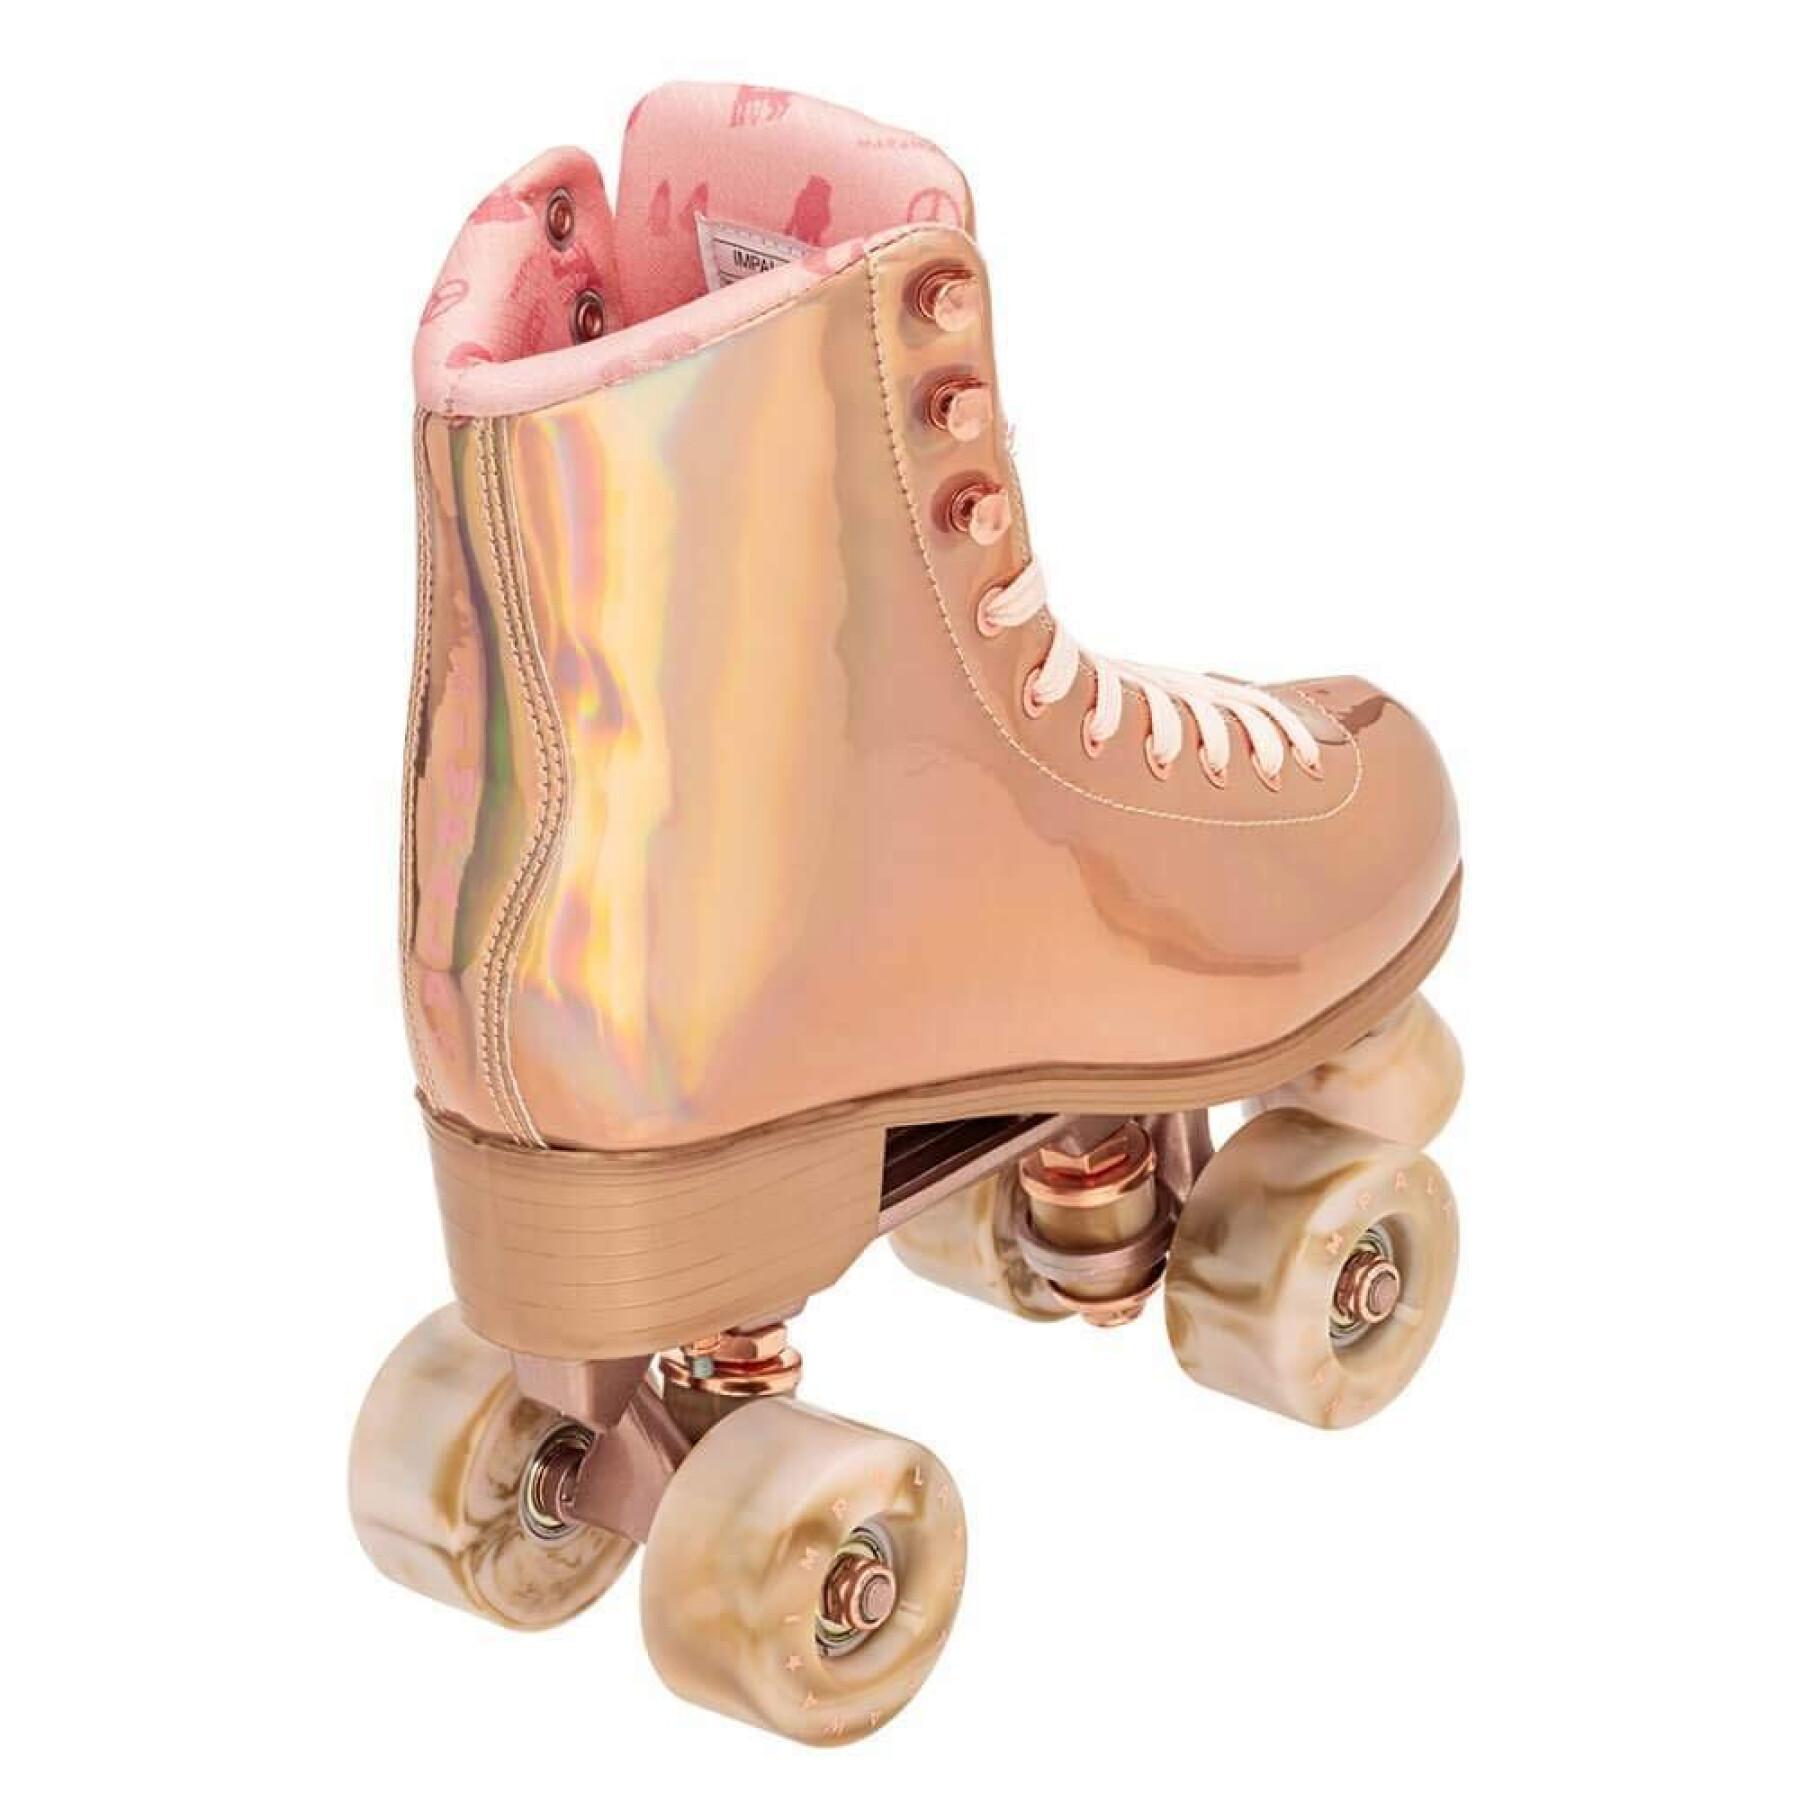 Sapatos de Mulher Impala Quad Skate